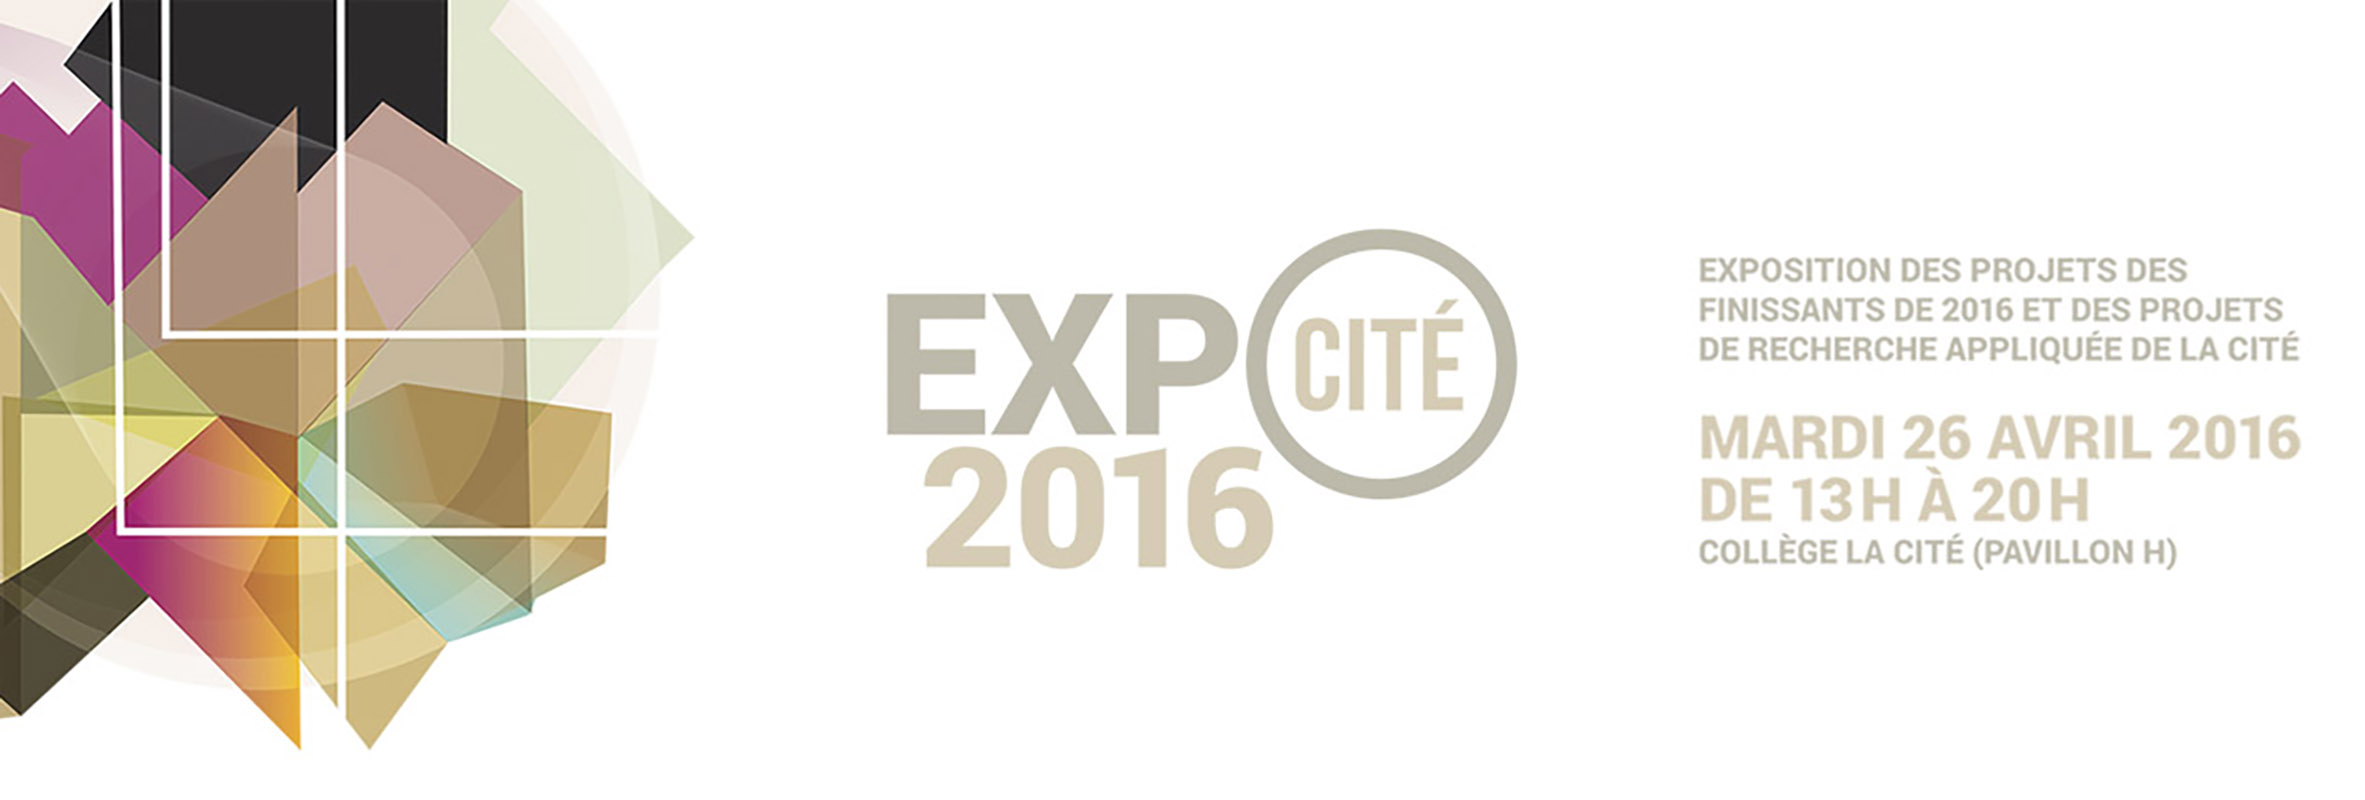 Expo-Cité 2016